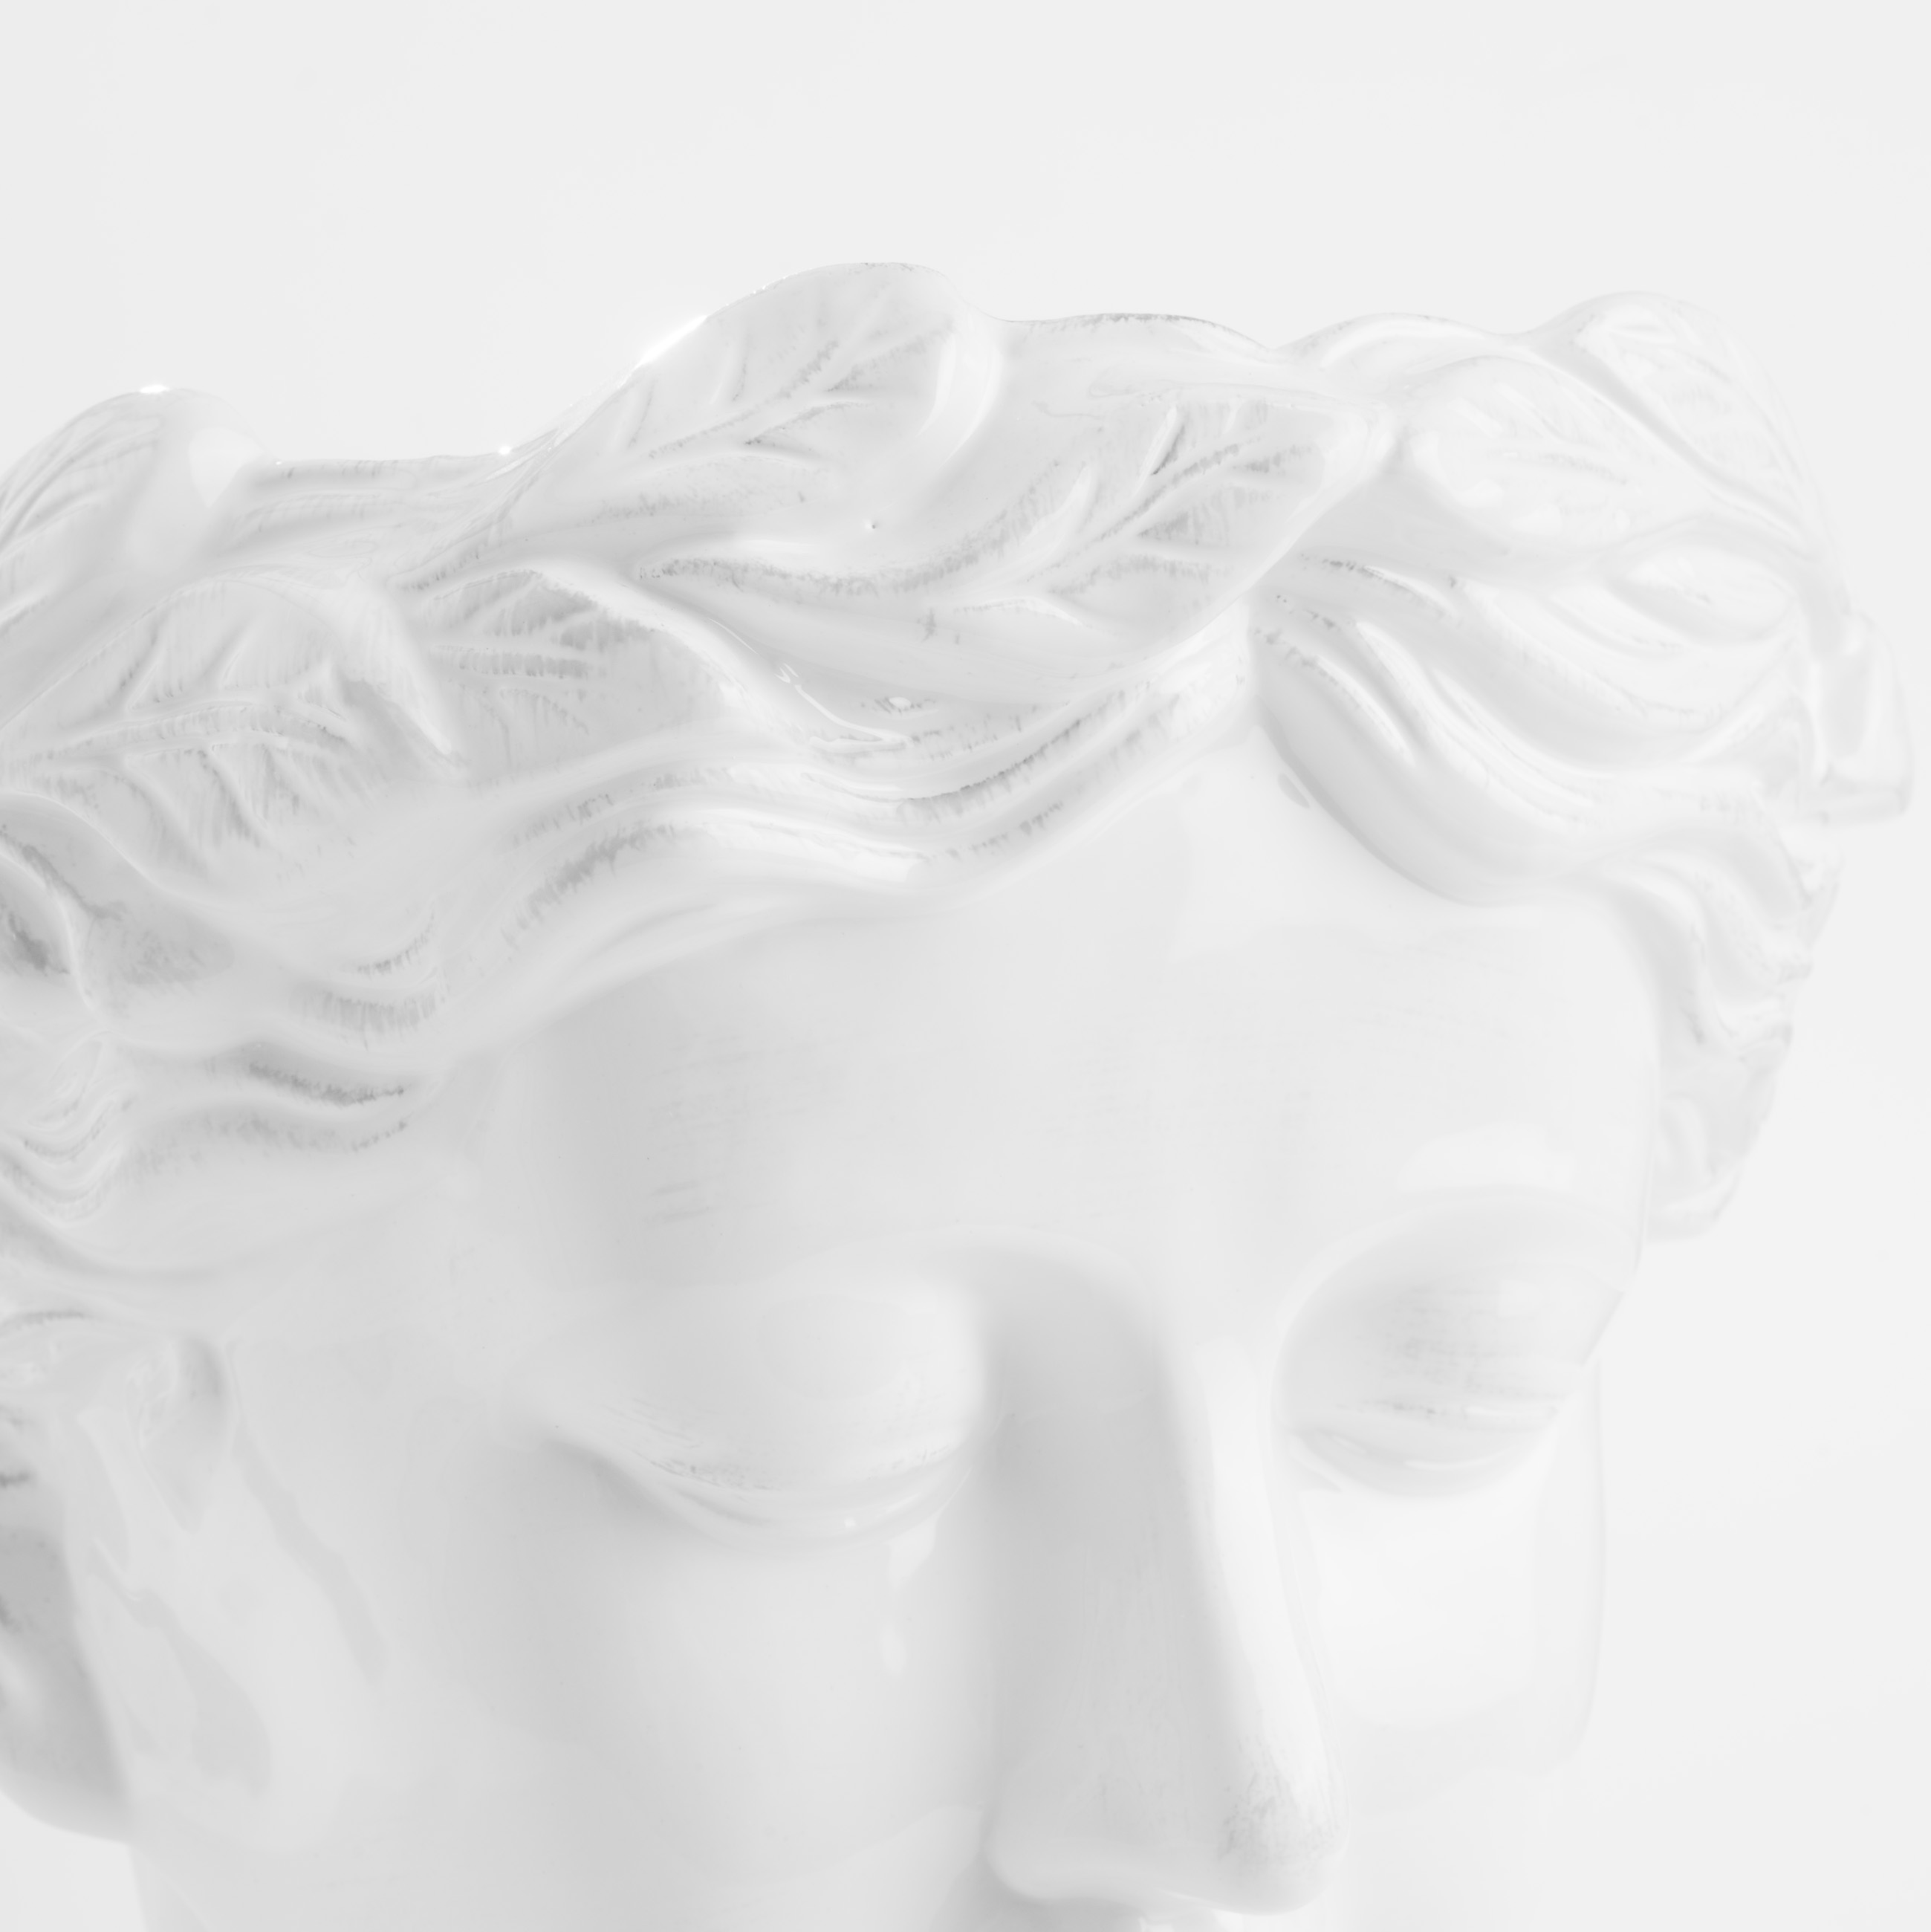 Ваза для цветов, 29 см, декоративная, керамика, белая, Афродита, Olympus изображение № 5